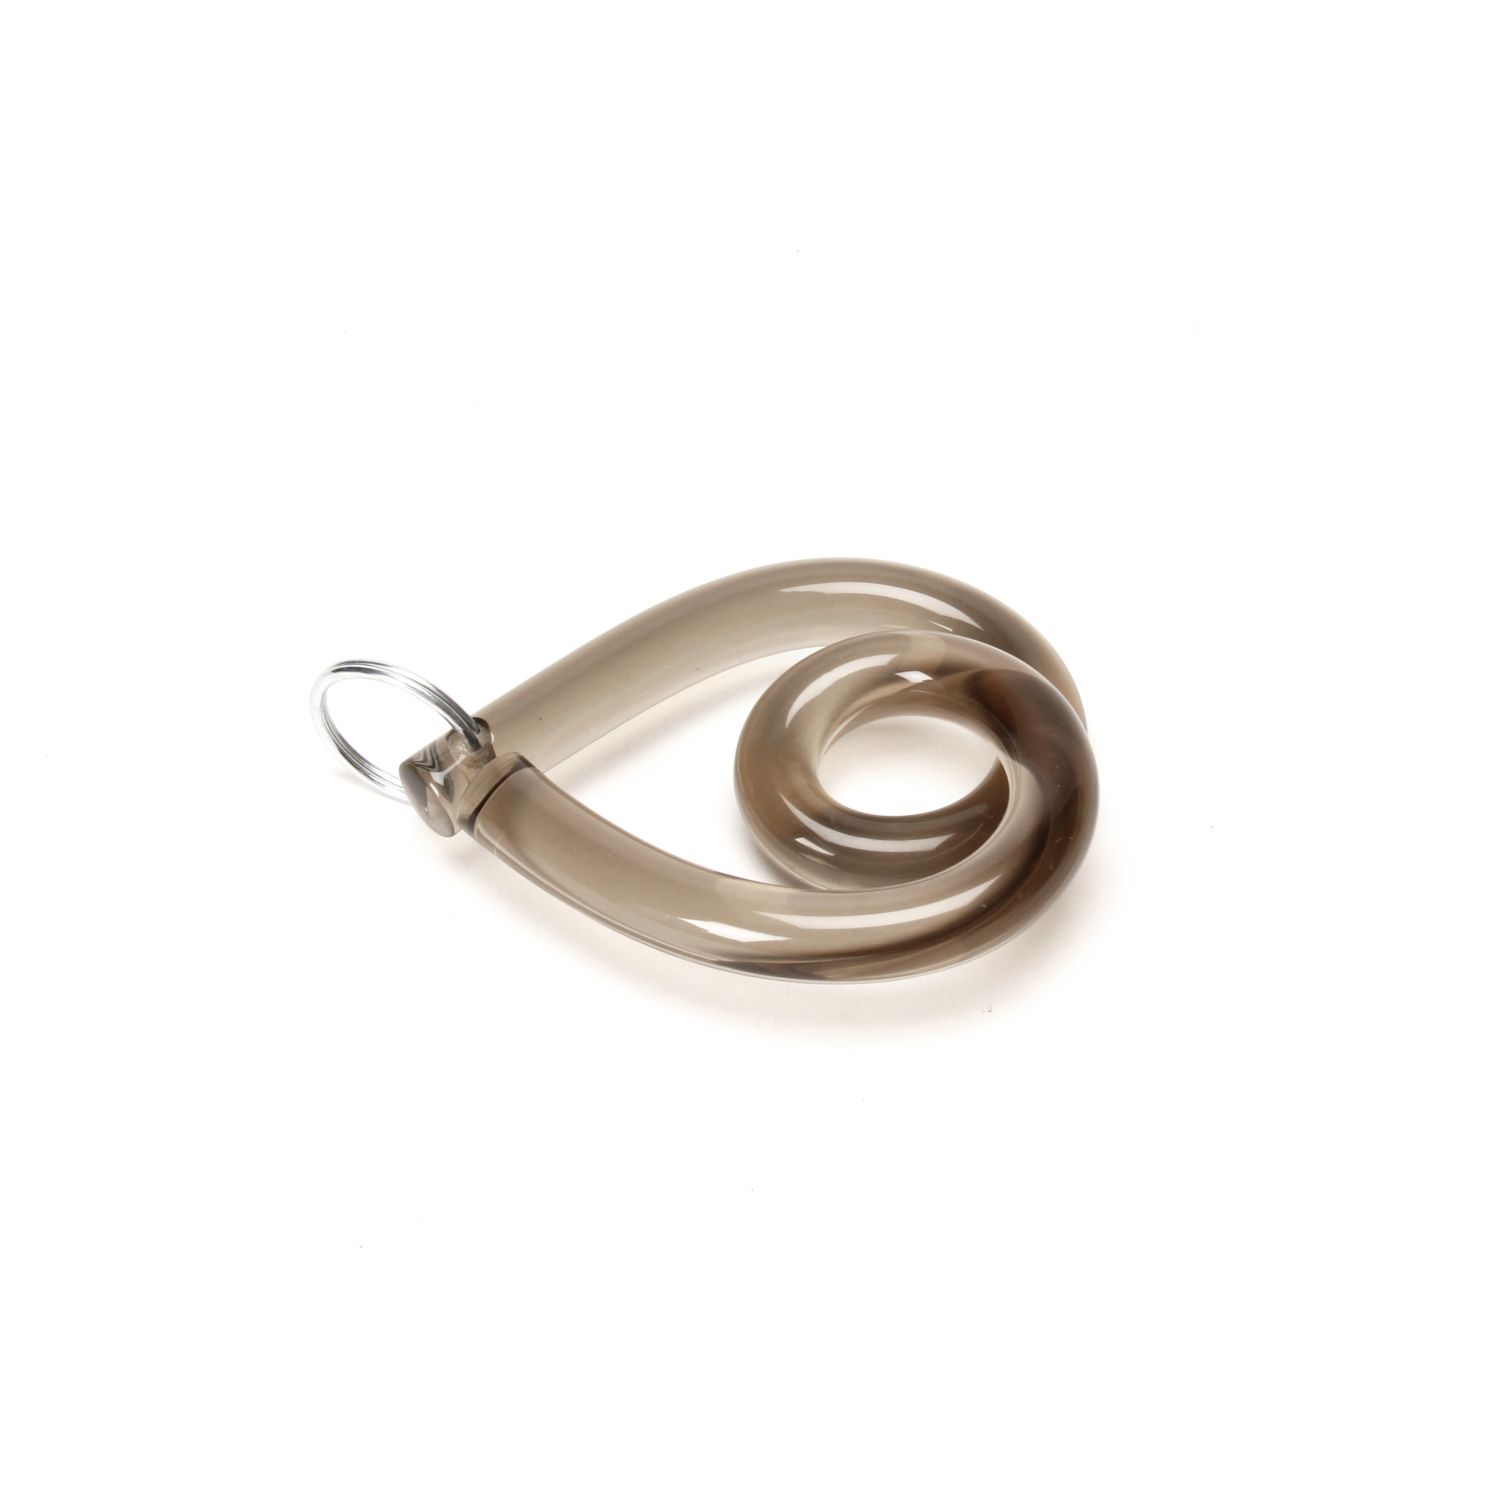 Corey Moranis: Heart Keychain Smoke Product Image 2 of 3